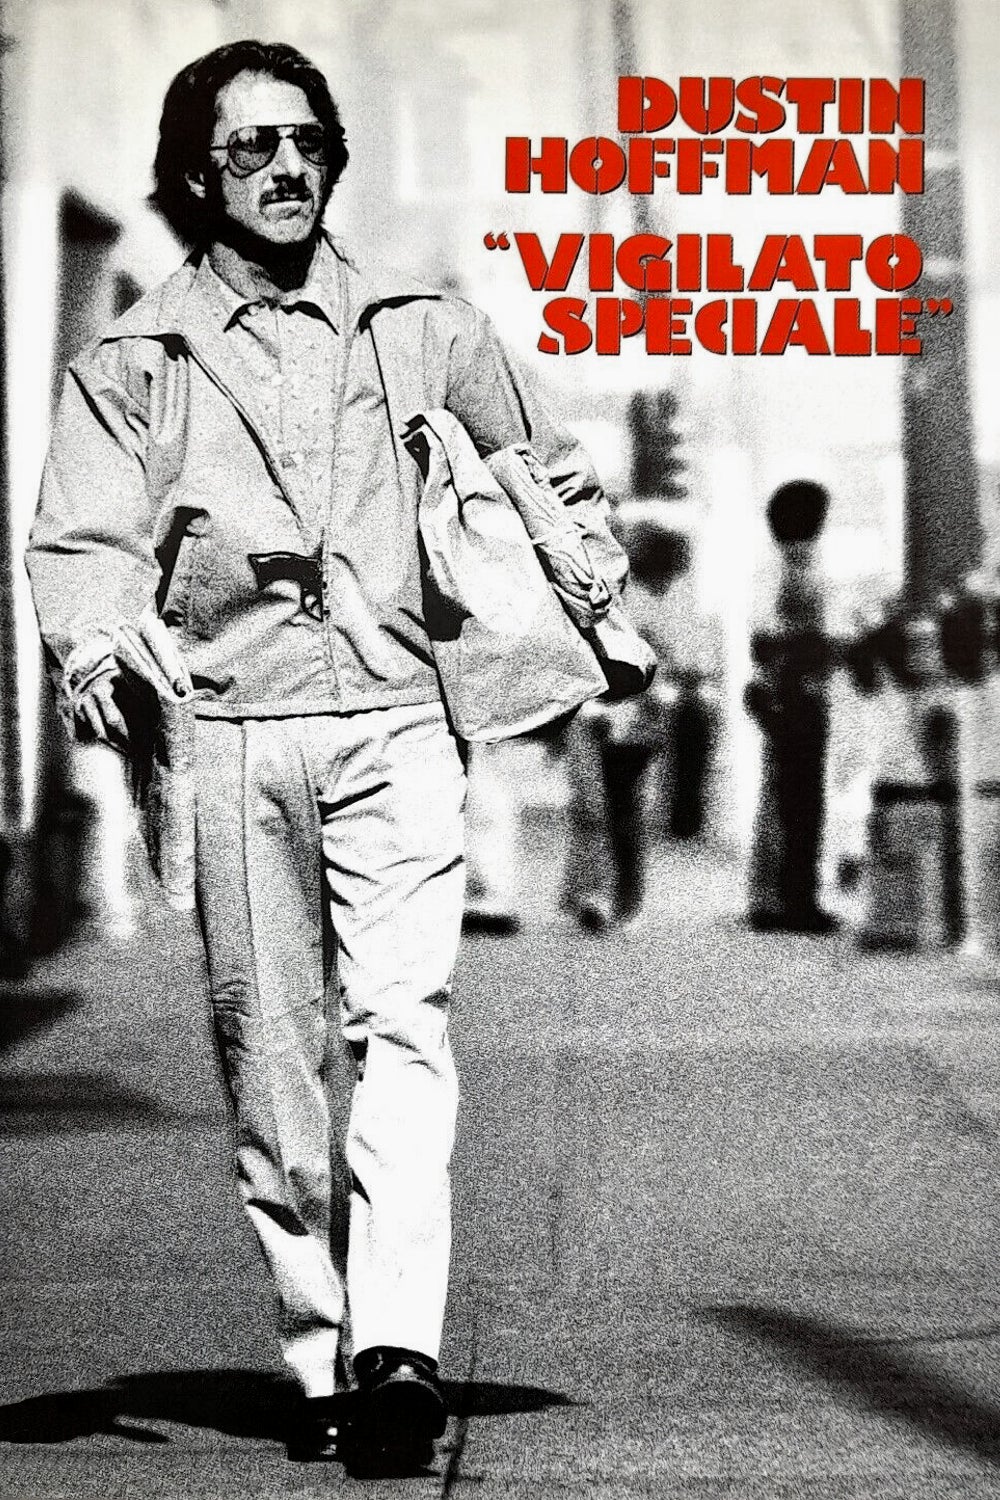 Vigilato speciale [HD] (1978)